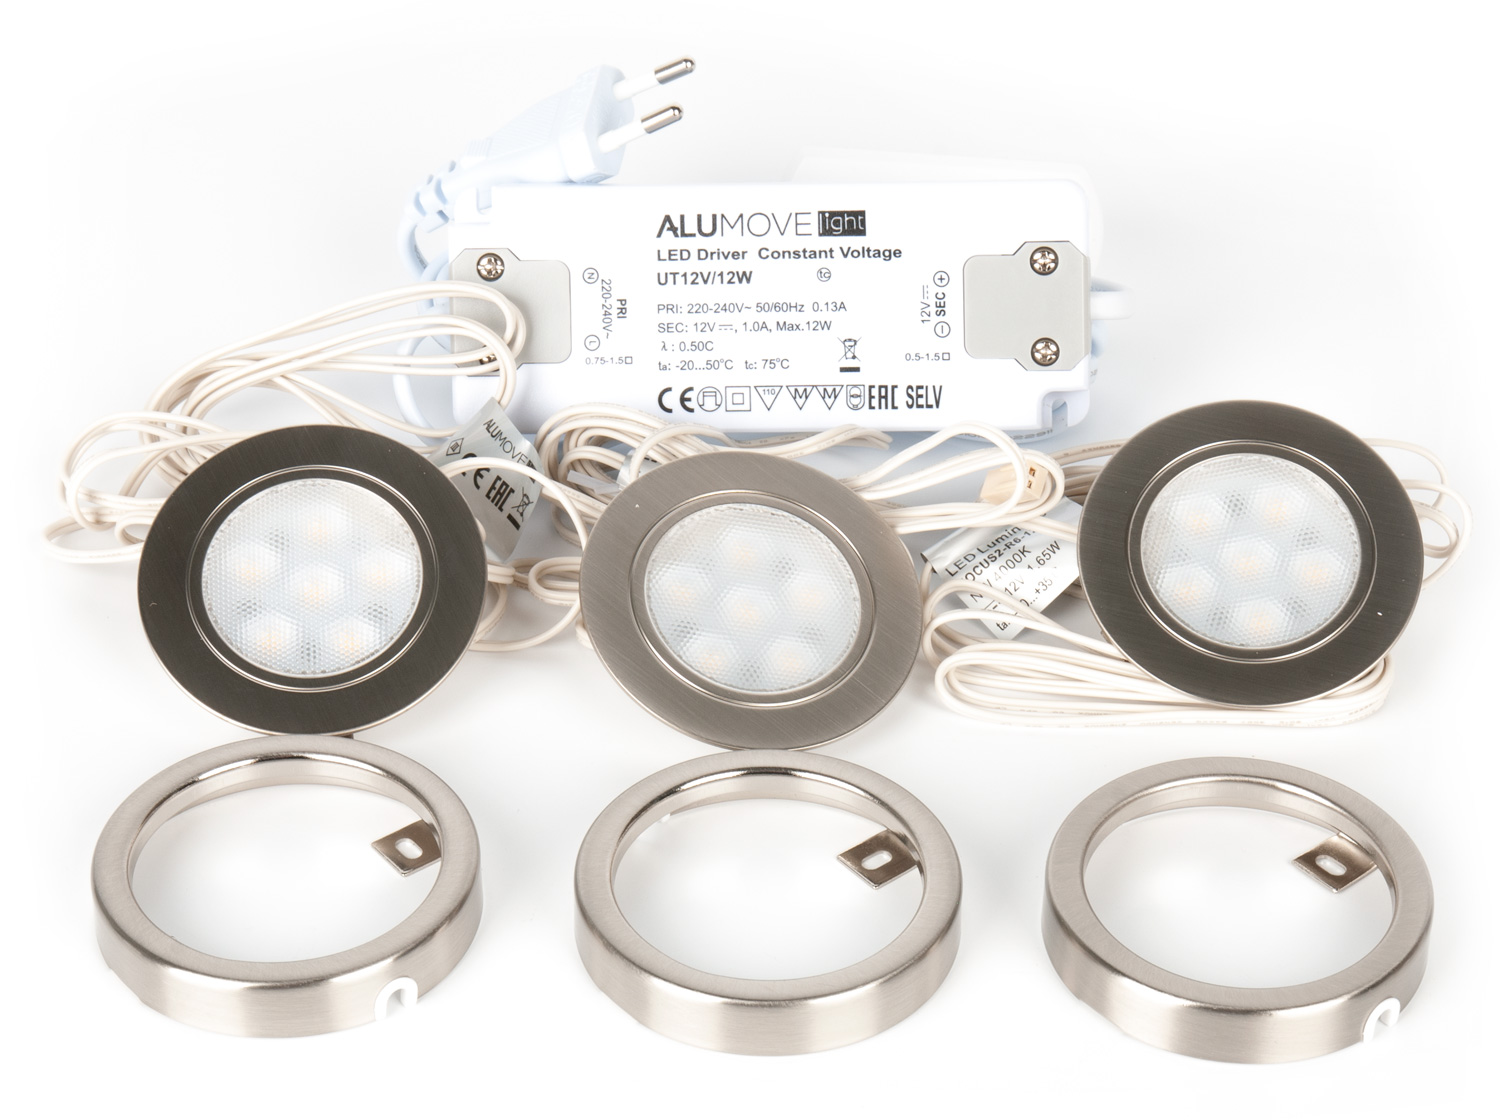 Alumove light. Alumove Light 301002-AC трансформатор для ленты UT 12v/12w. Alumove Light 302003-SF. Vlttl210nset. Alumove Light som002-3000 Wing пластиковый профиль-рассеиватель.